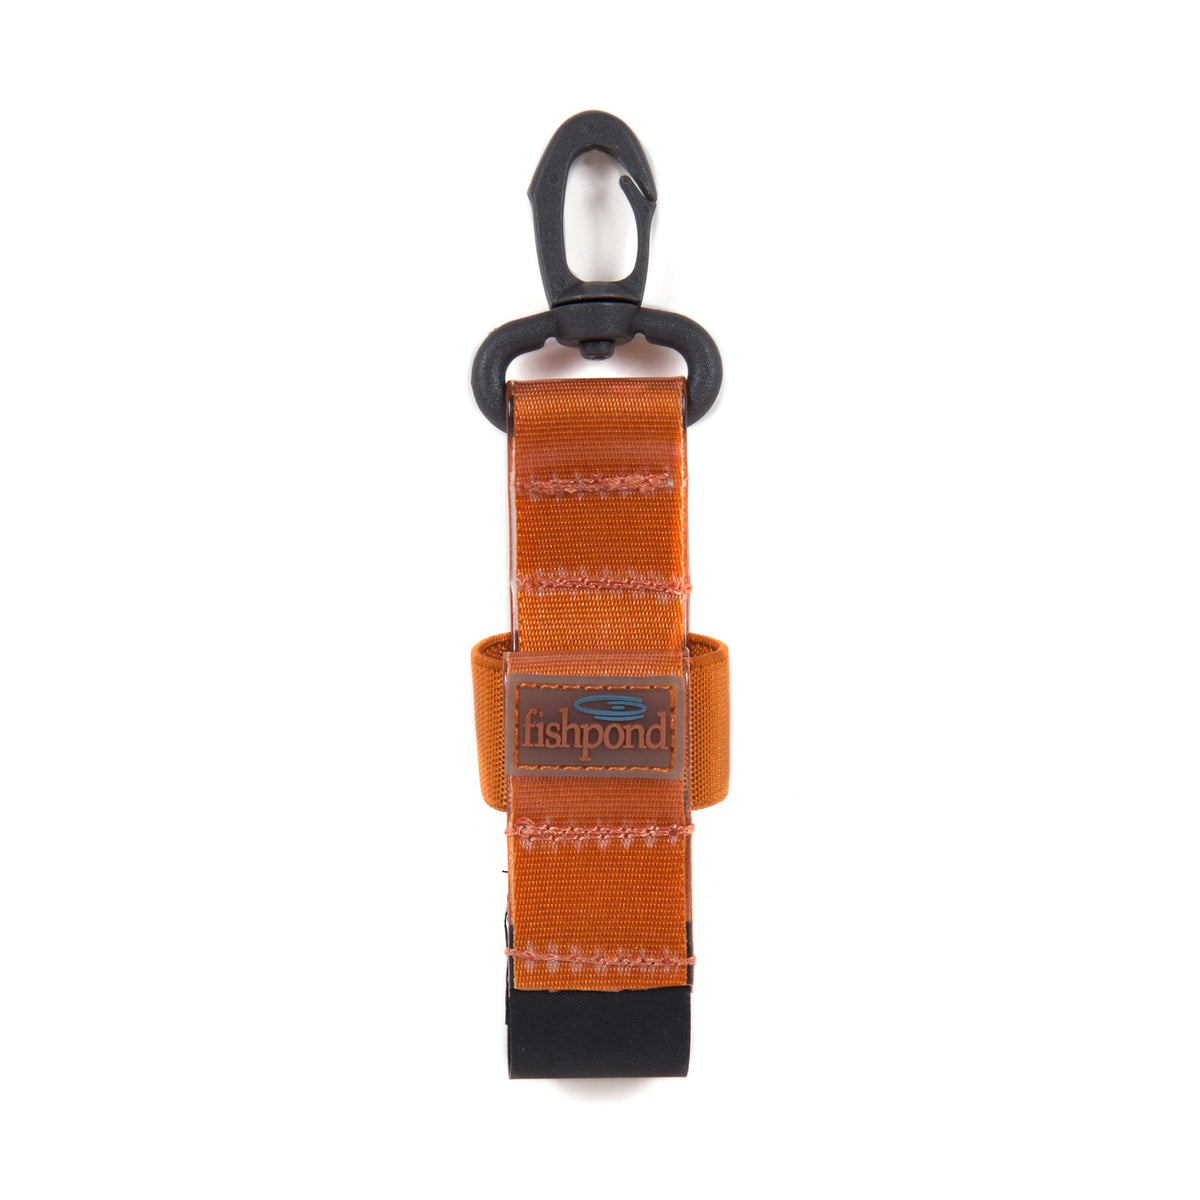 816332012372 DSBH CO Fishpond Dry Shake Bottle Holder Fly Fishing Floatant Shake Holder Cutthroat Orange